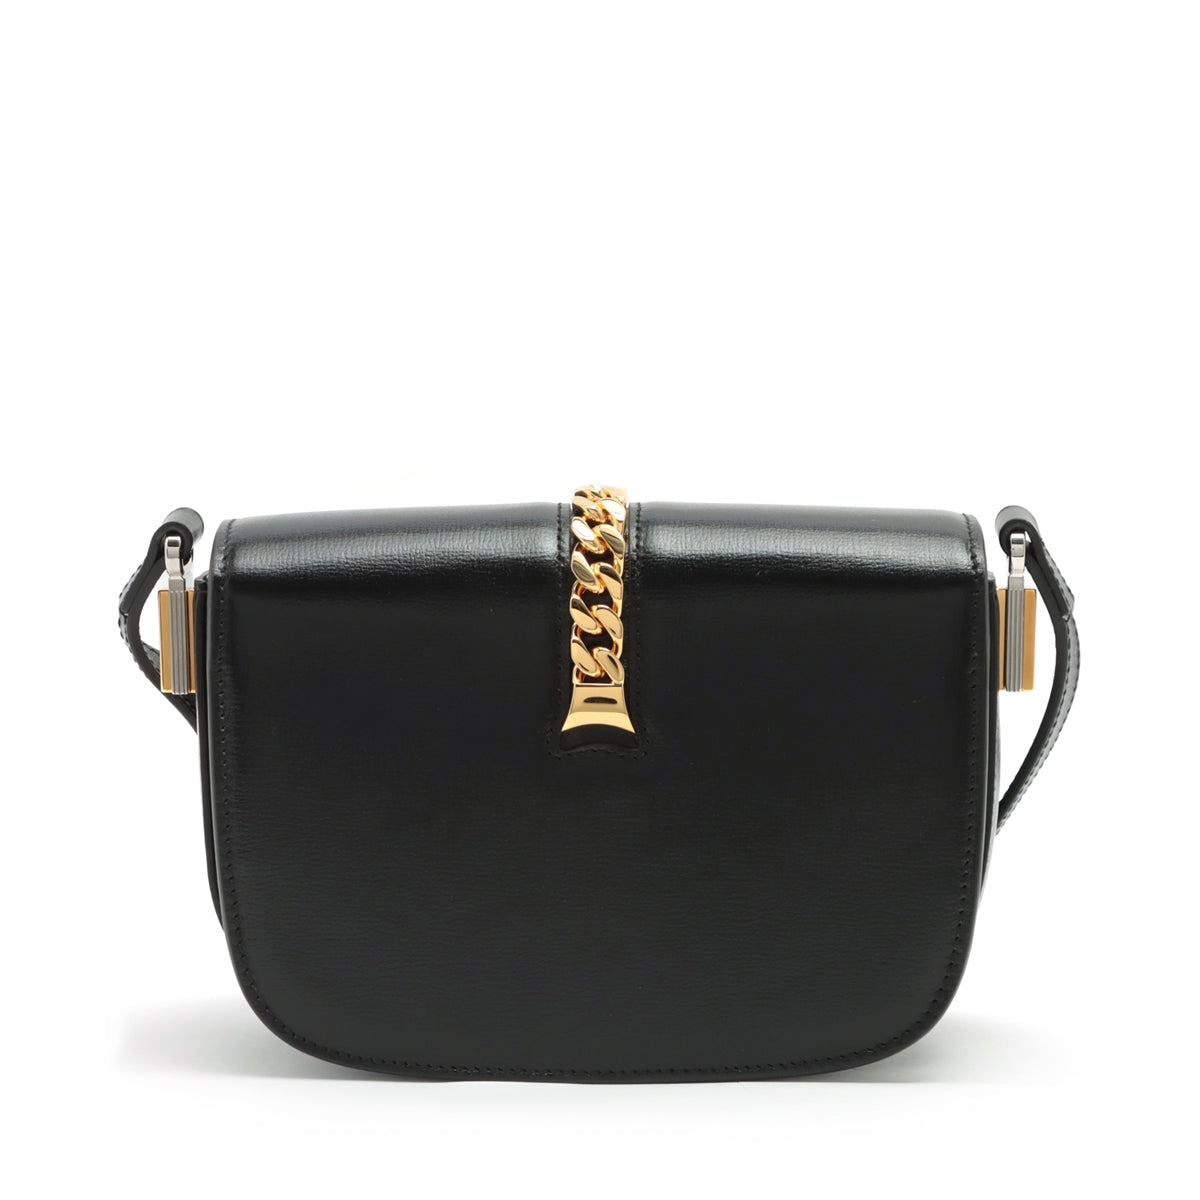 Gucci Sylvie 1969 Leather Shoulder bag Black 615965